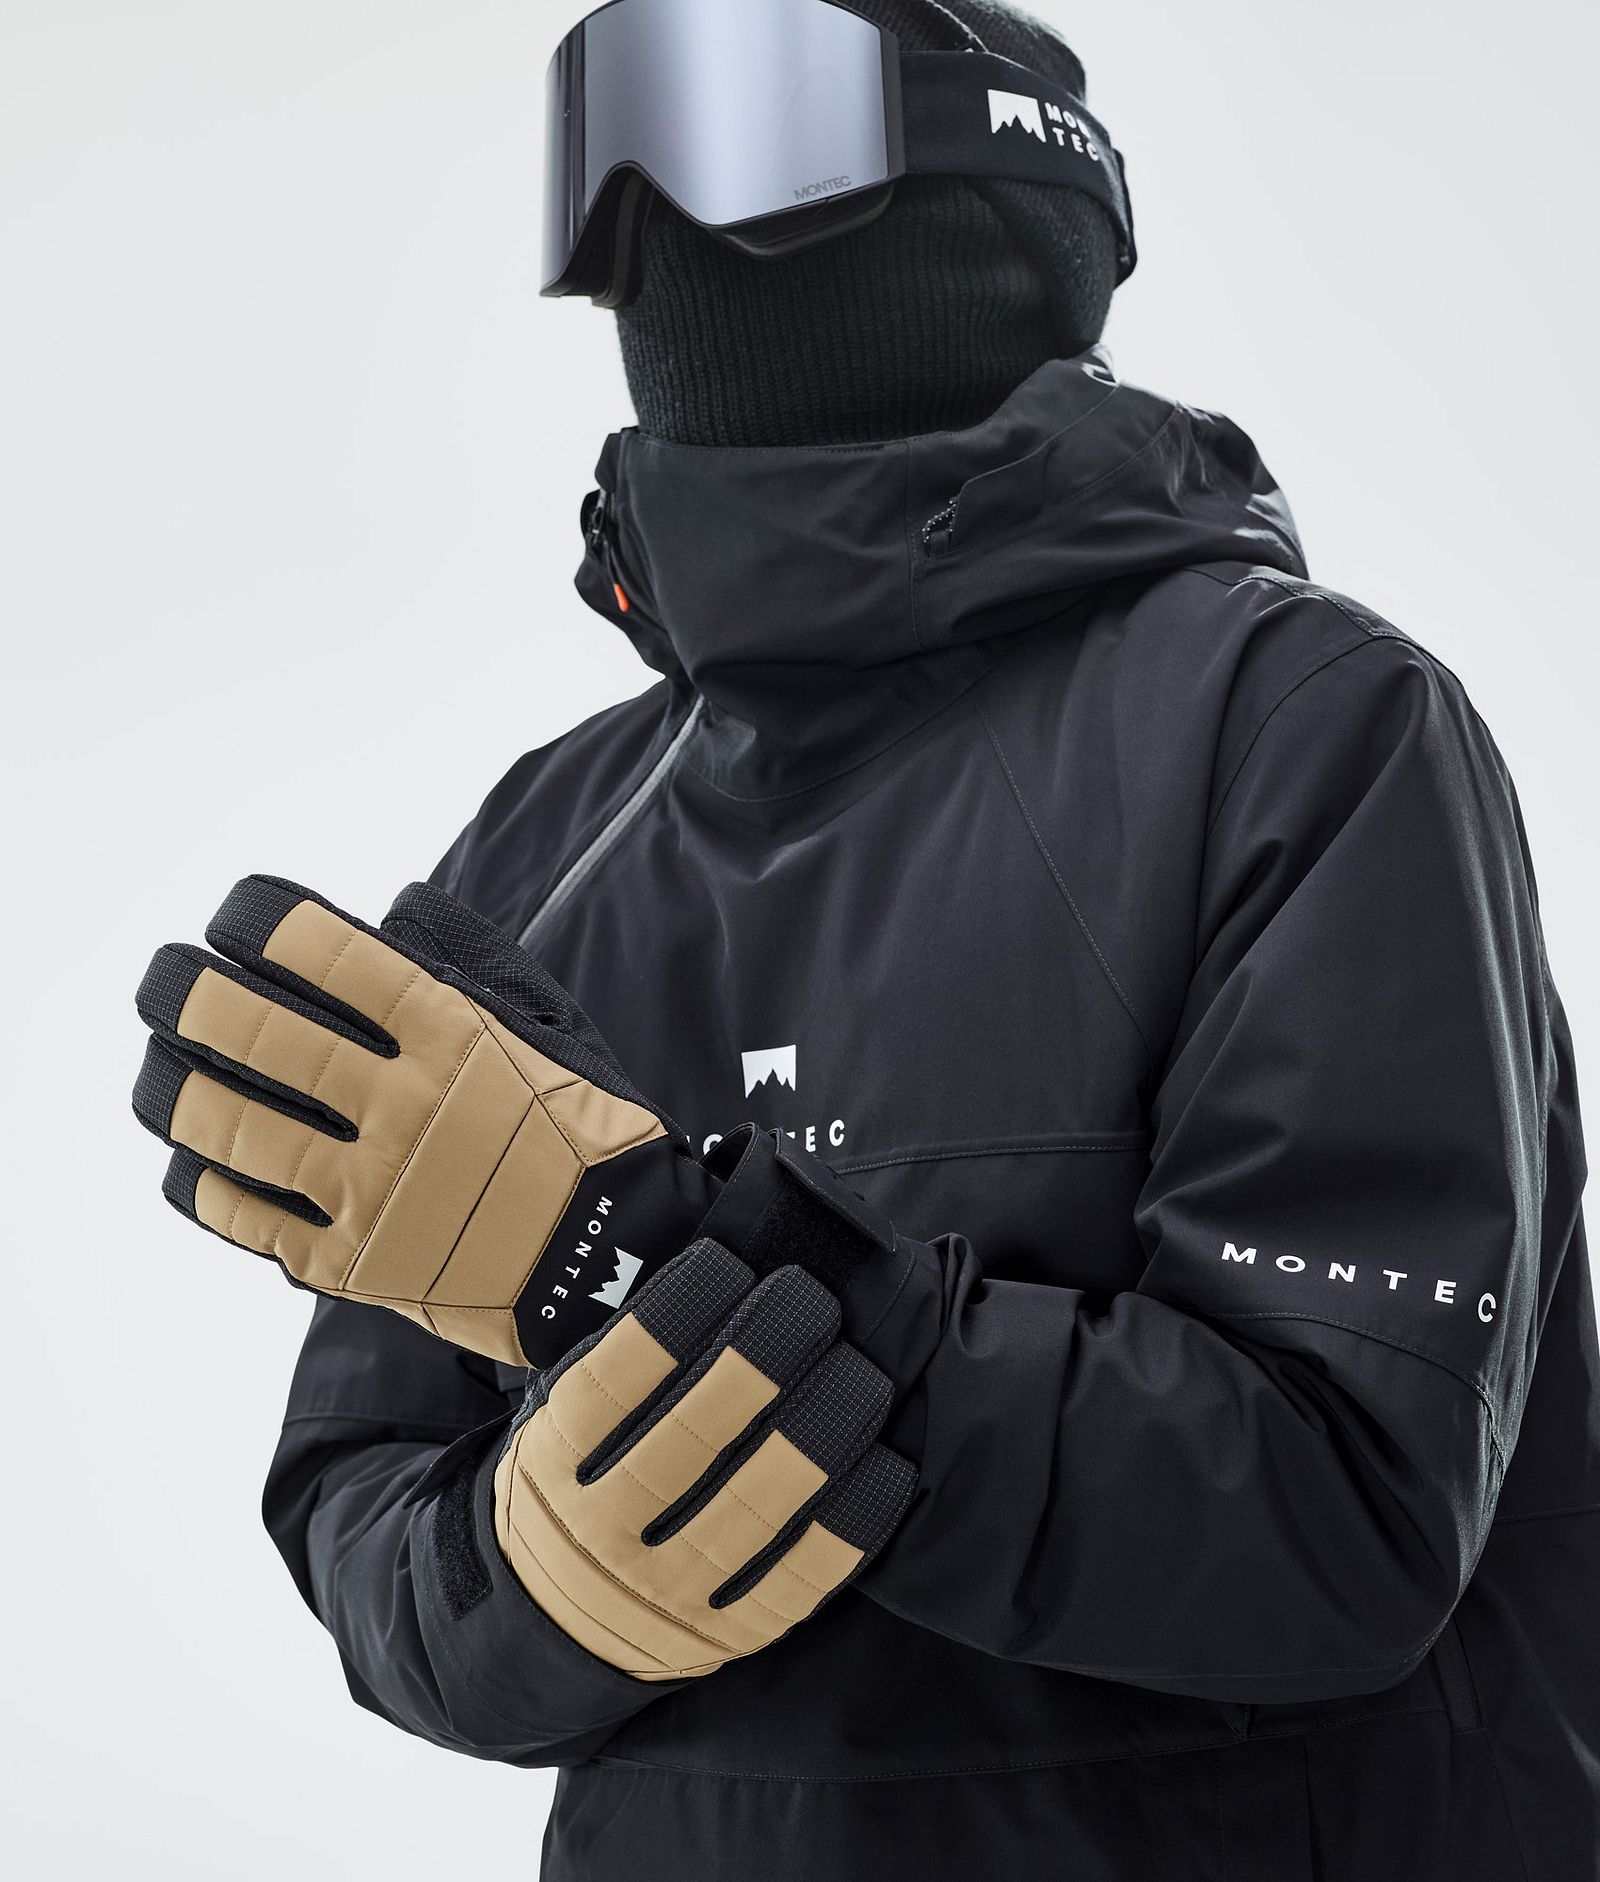 Kilo Ski Gloves Gold, Image 3 of 5